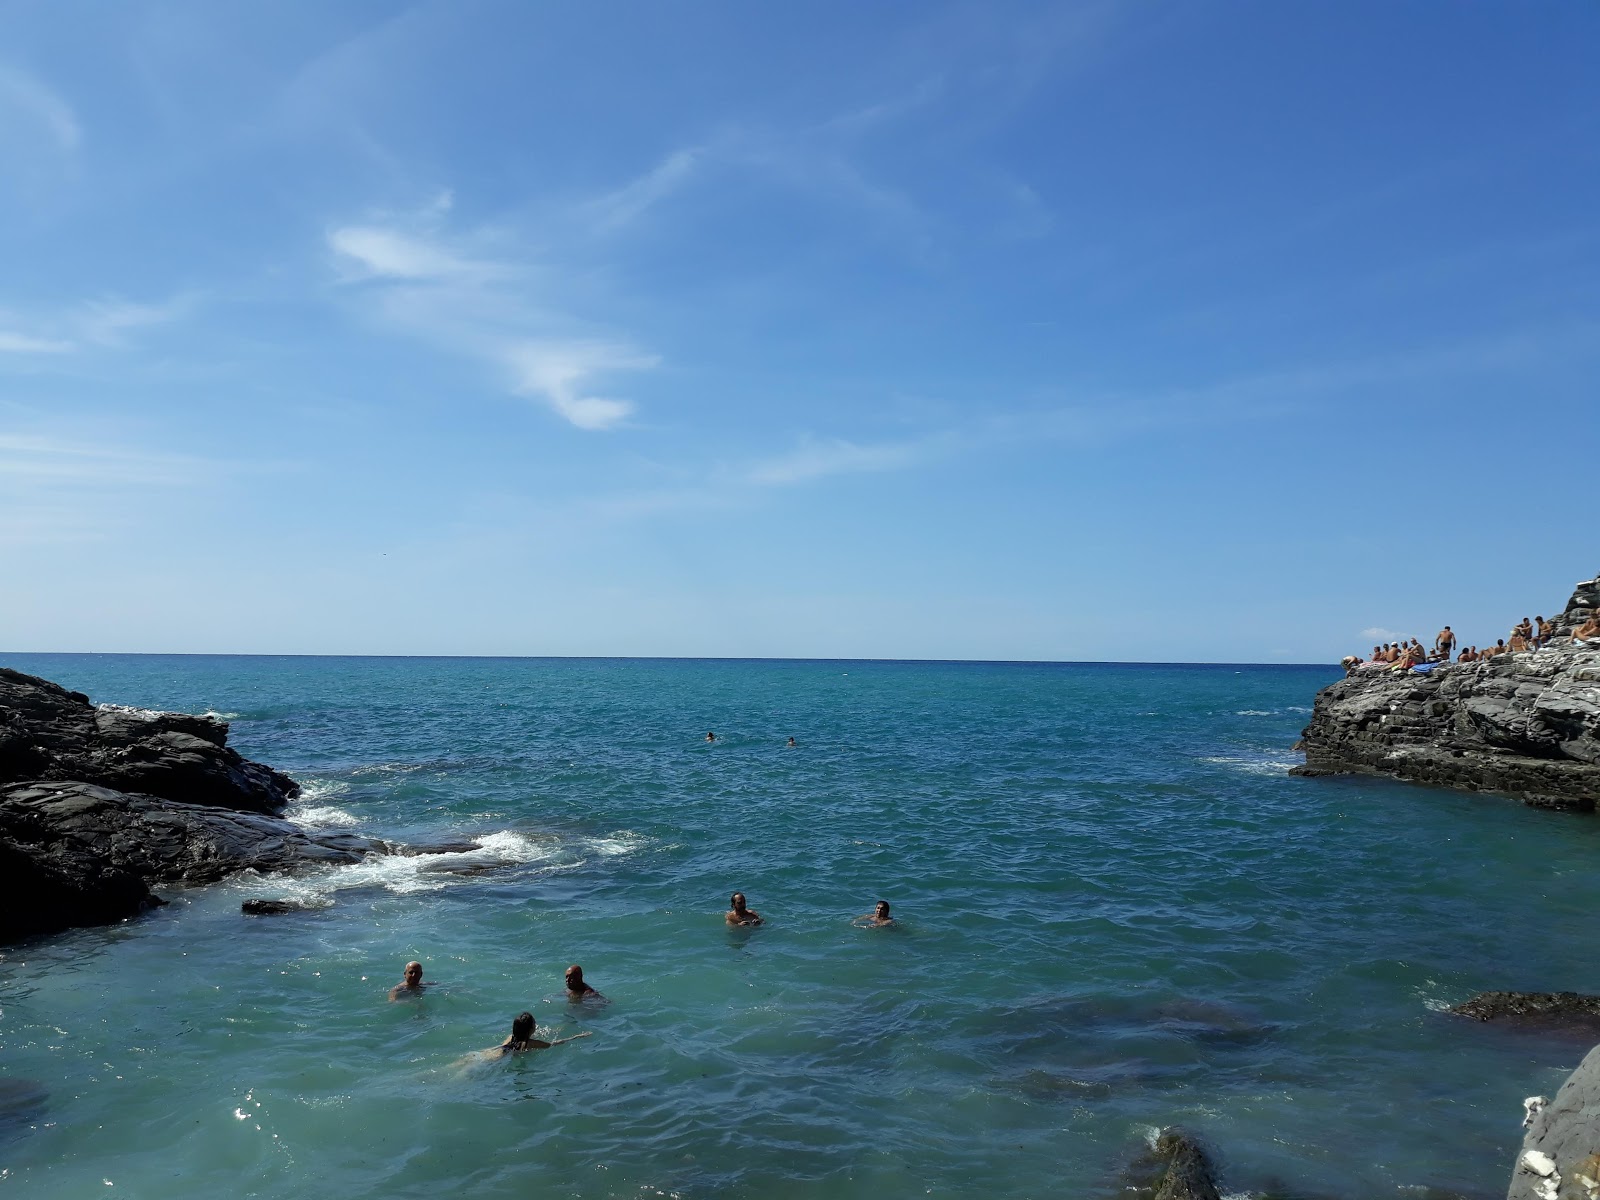 Fotografija Ciappea beach priljubljeno mesto med poznavalci sprostitve